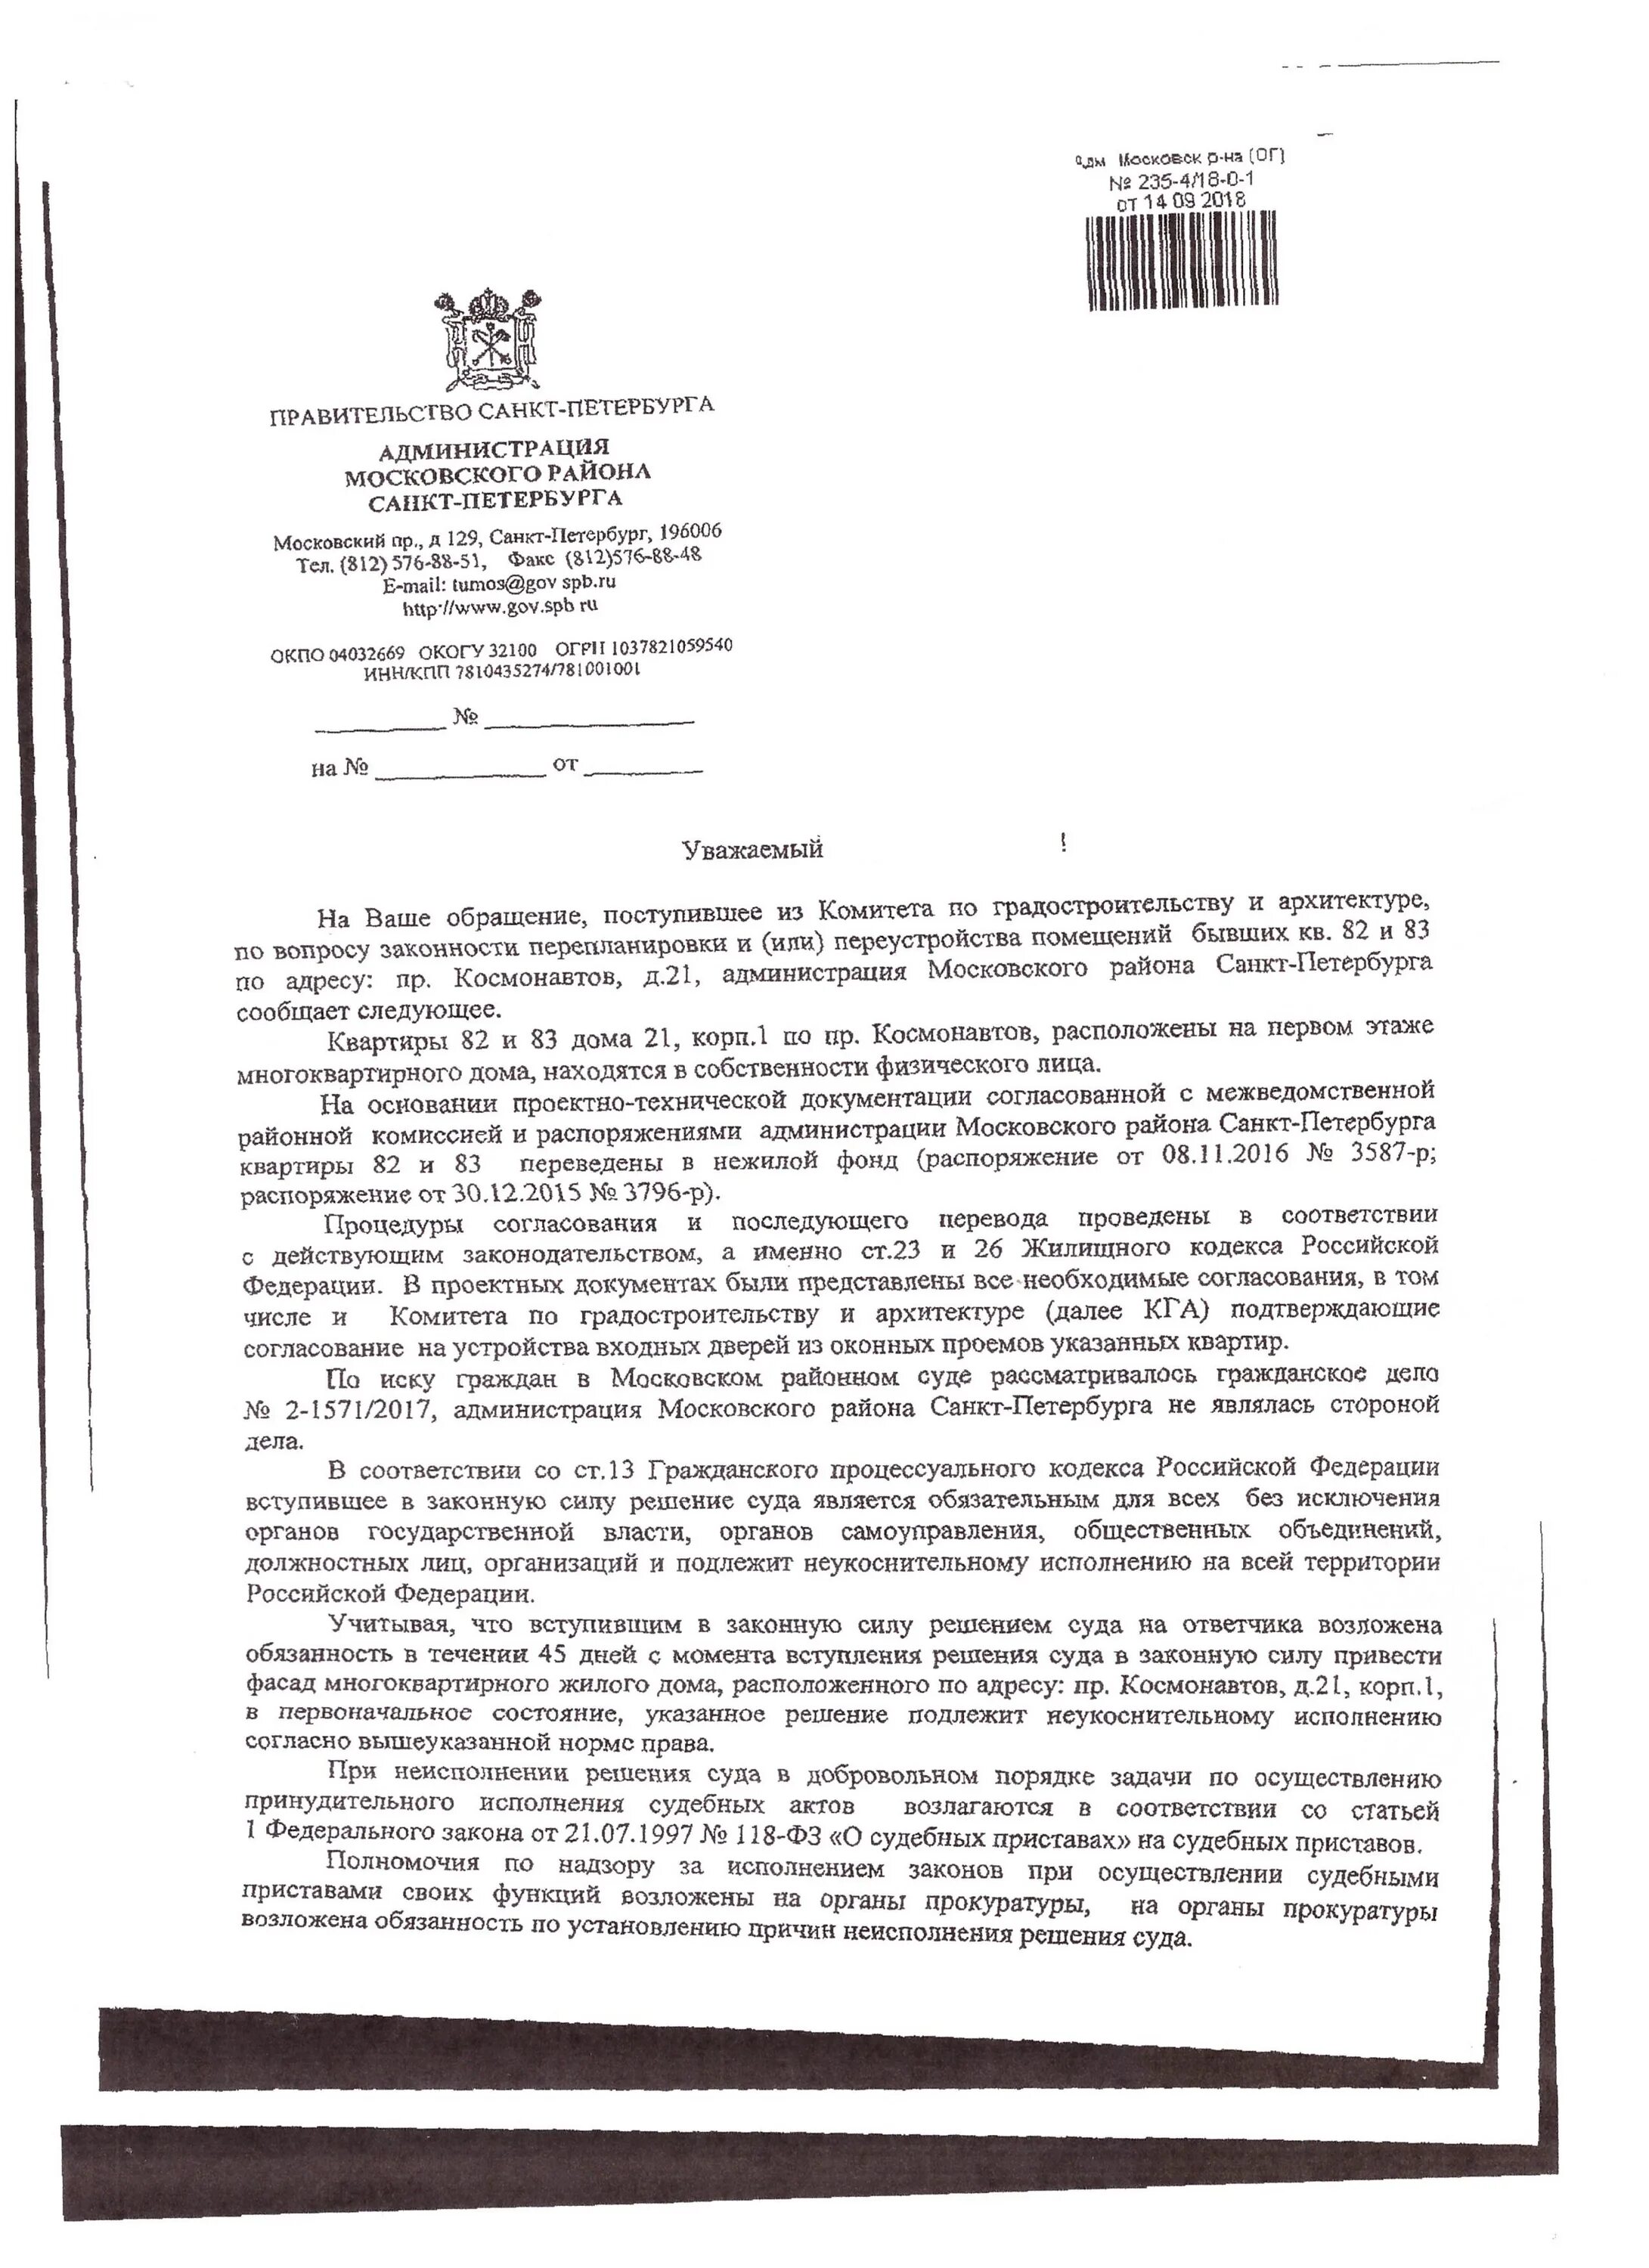 Администрация Московского района СПБ. Распоряжение жилищного комитета